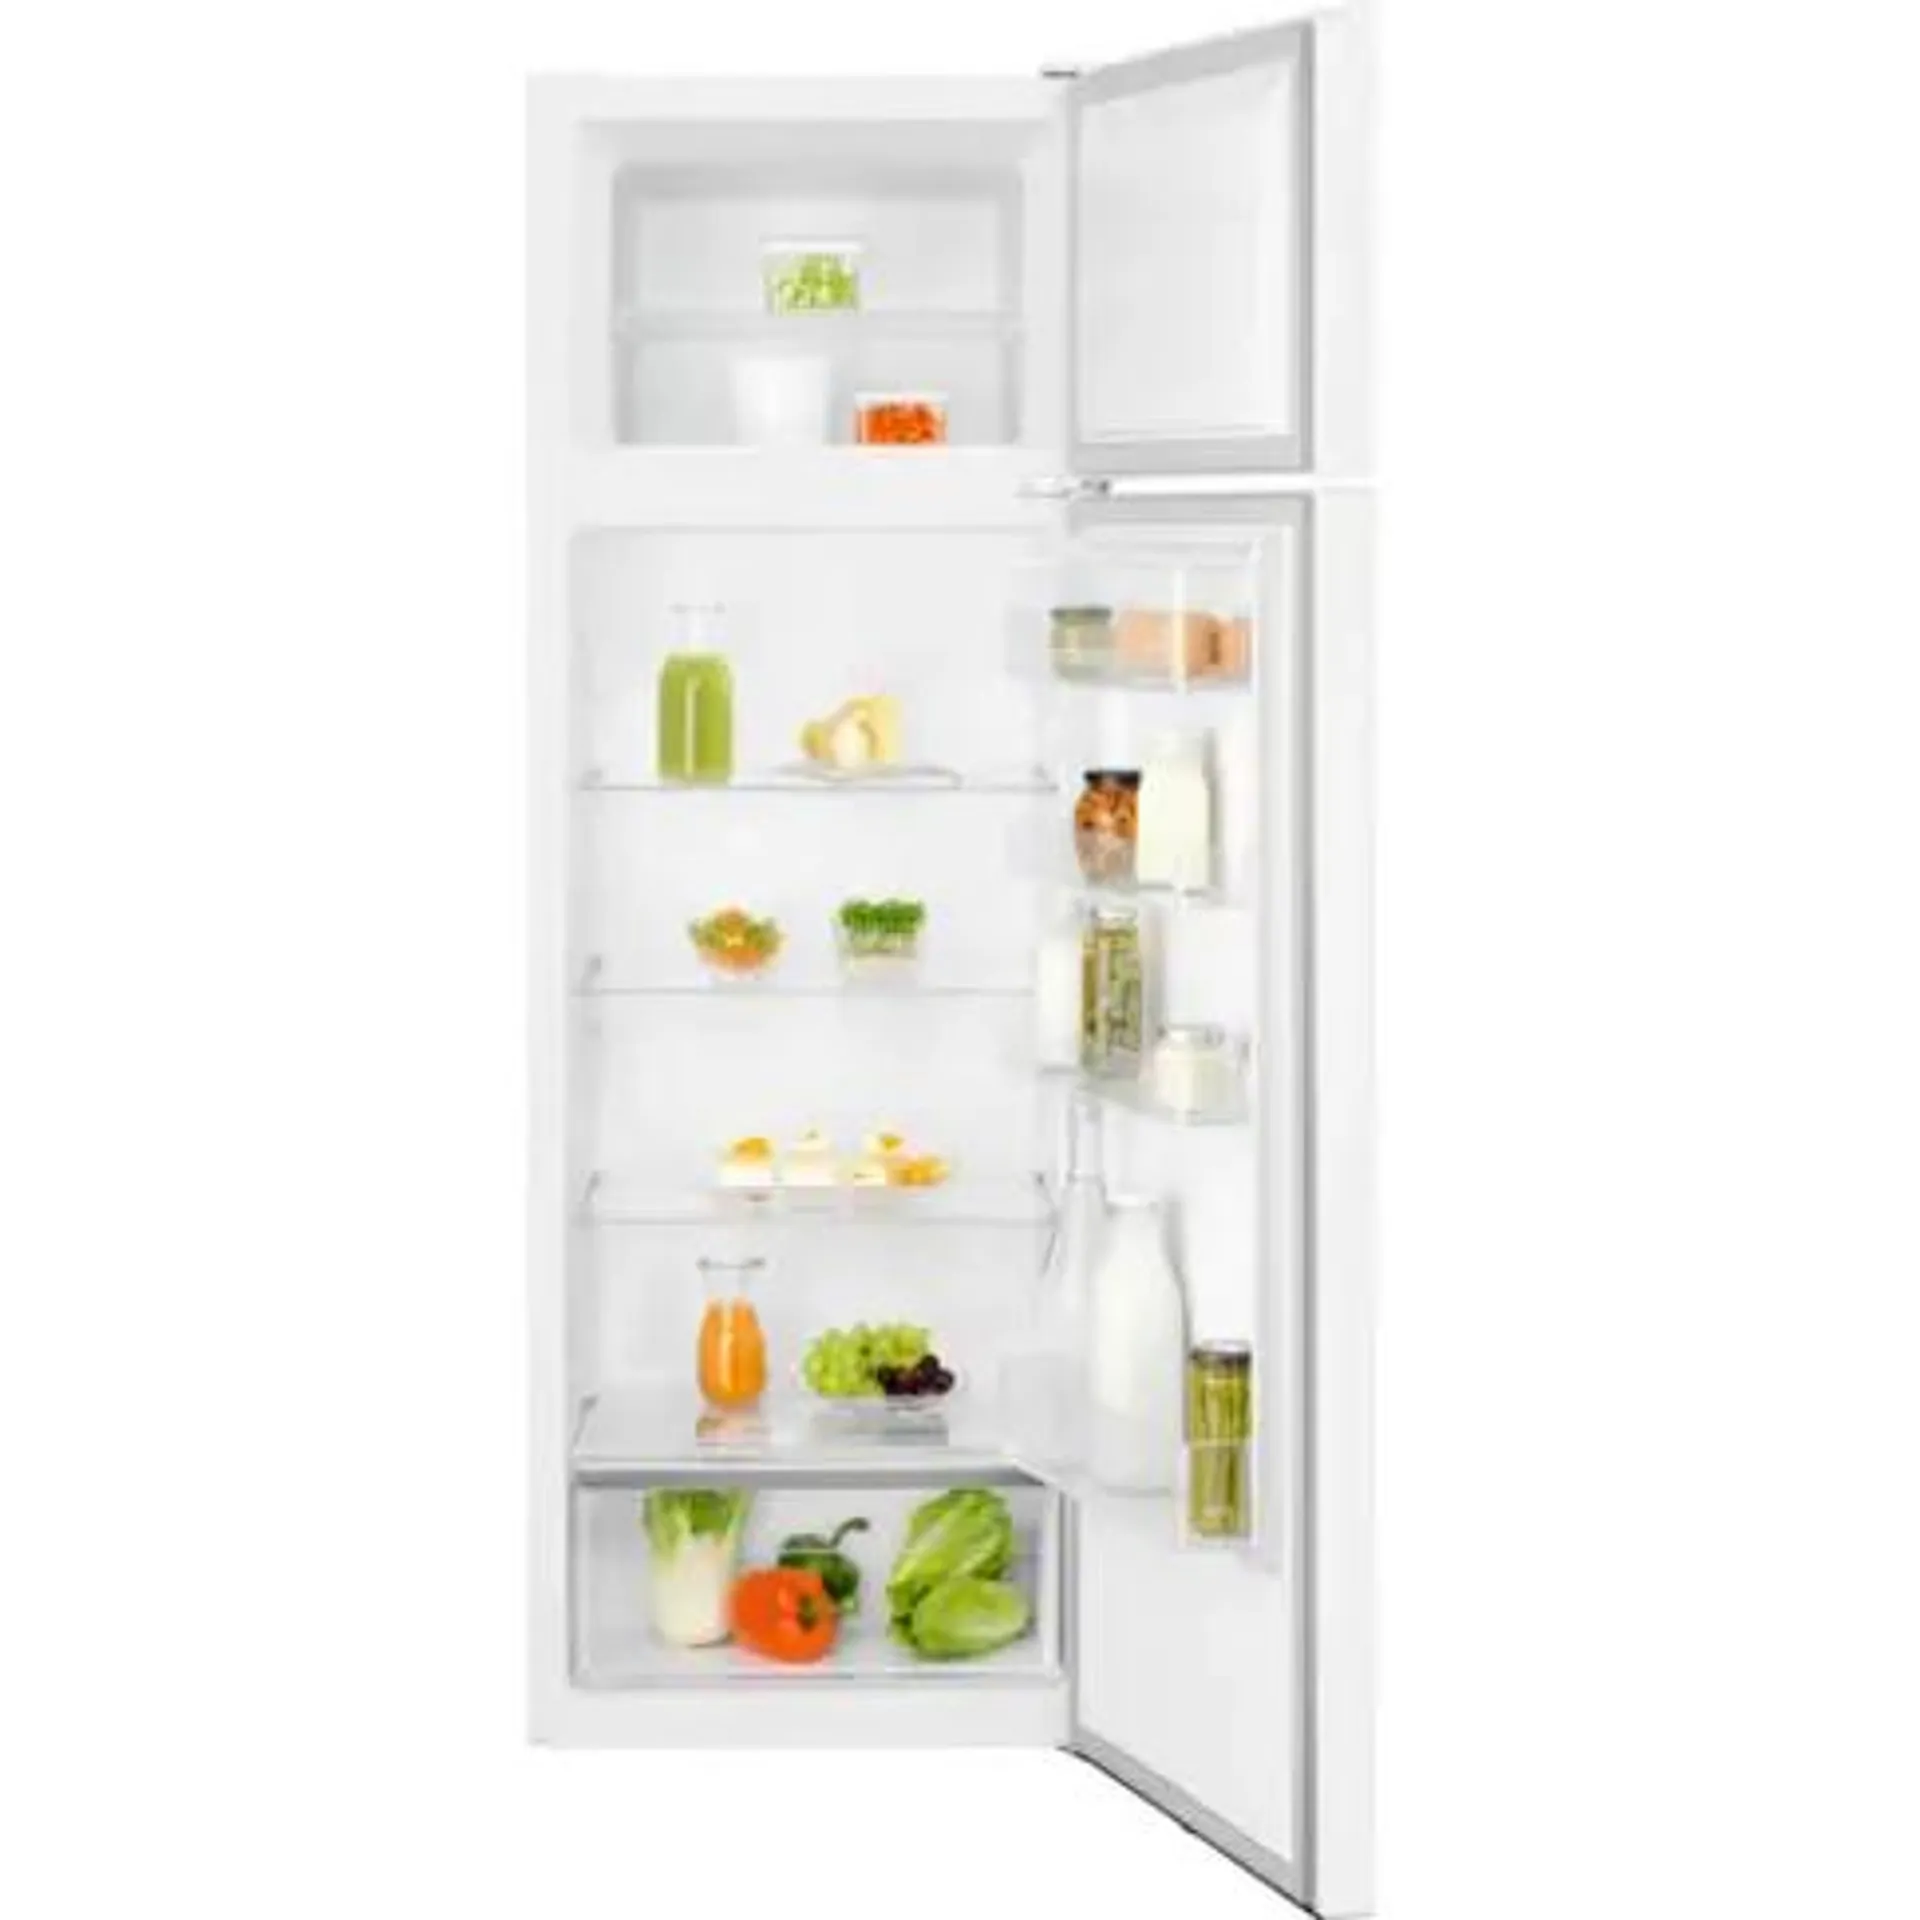 Réfrigérateur 2 portes ELECTROLUX LTB 1 AF 28 W 0